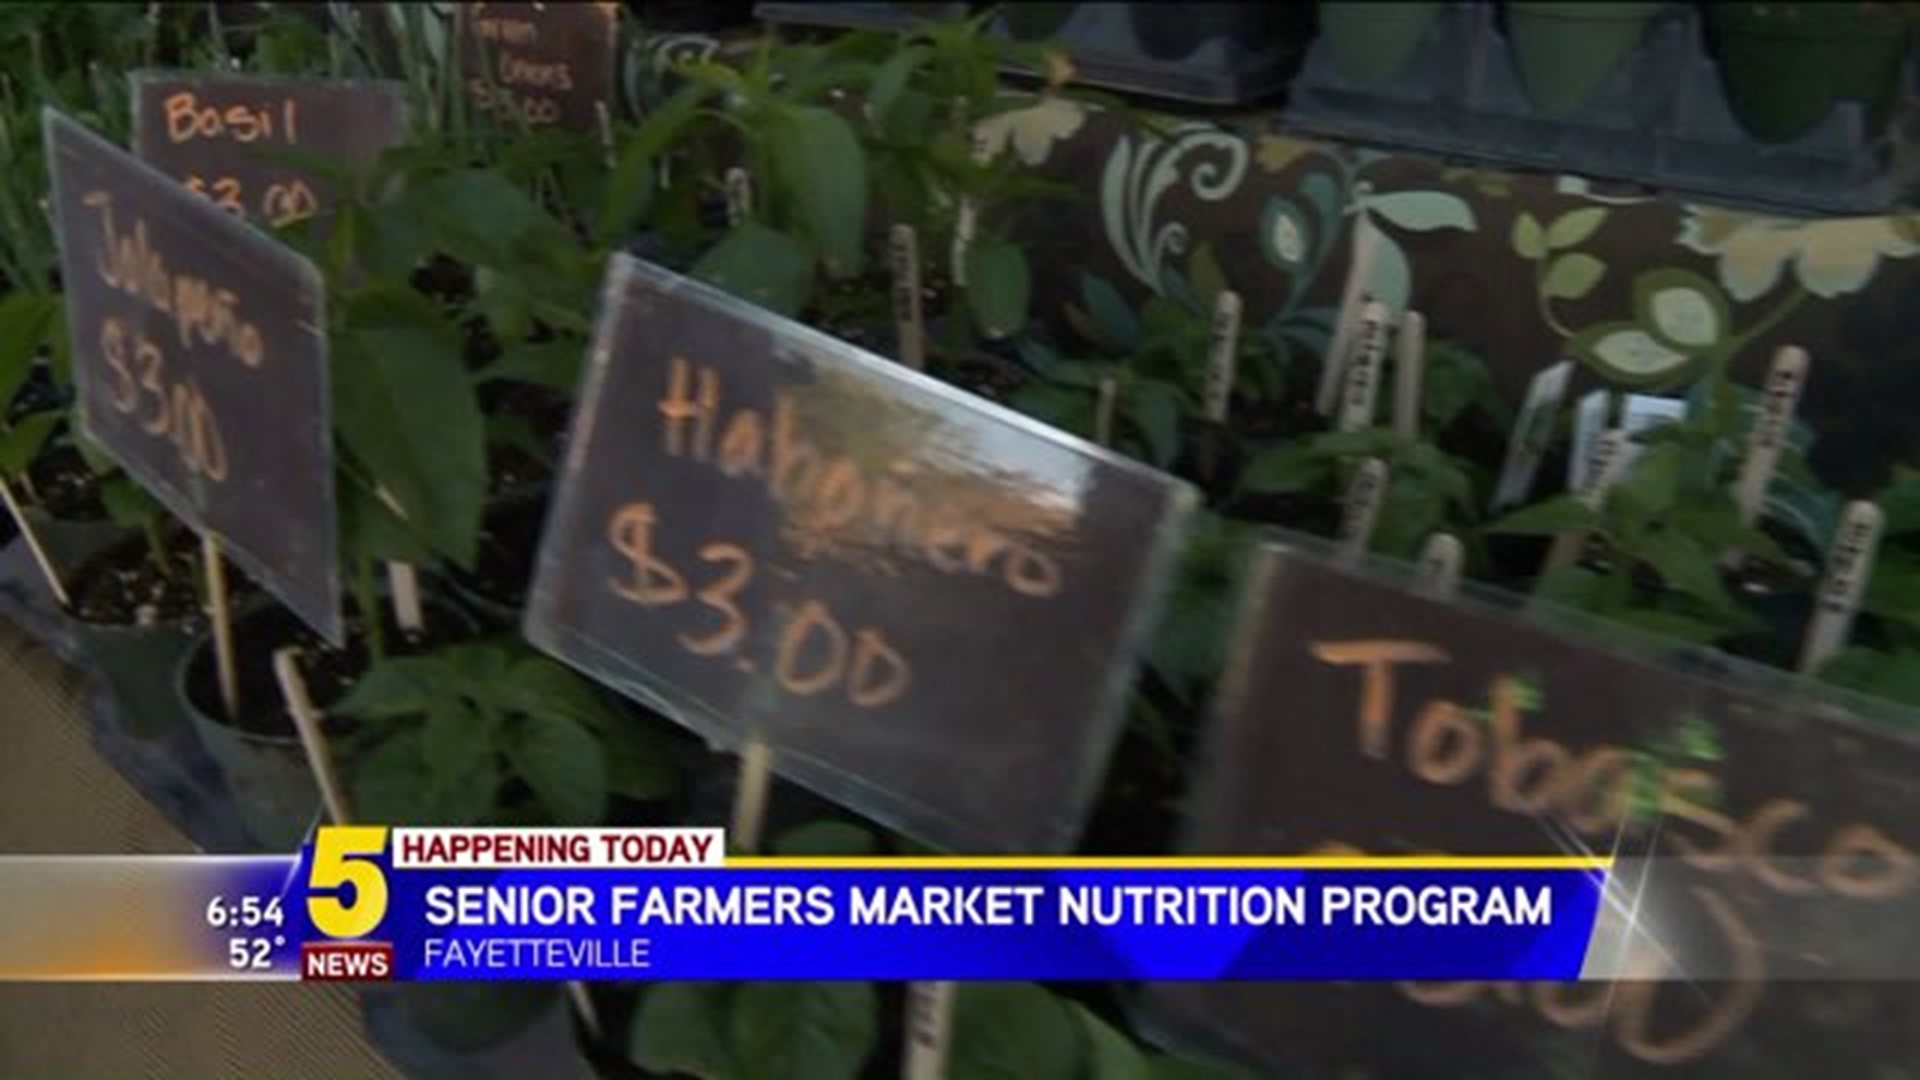 Senior farmers market nutrition program